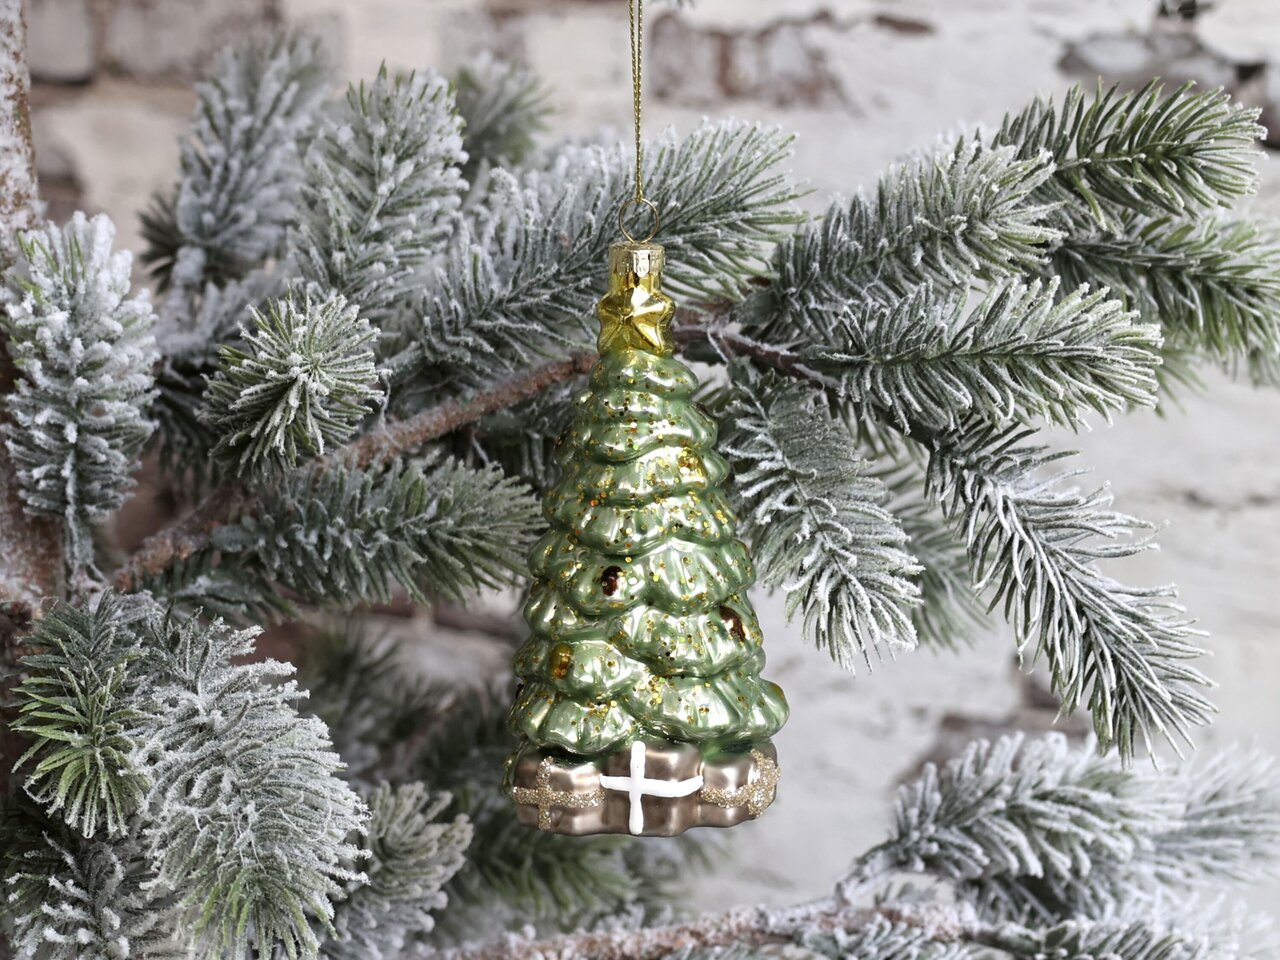 Chic Antique Weihnachtsbaum mit Geschenken zum Aufhängen Preview Image